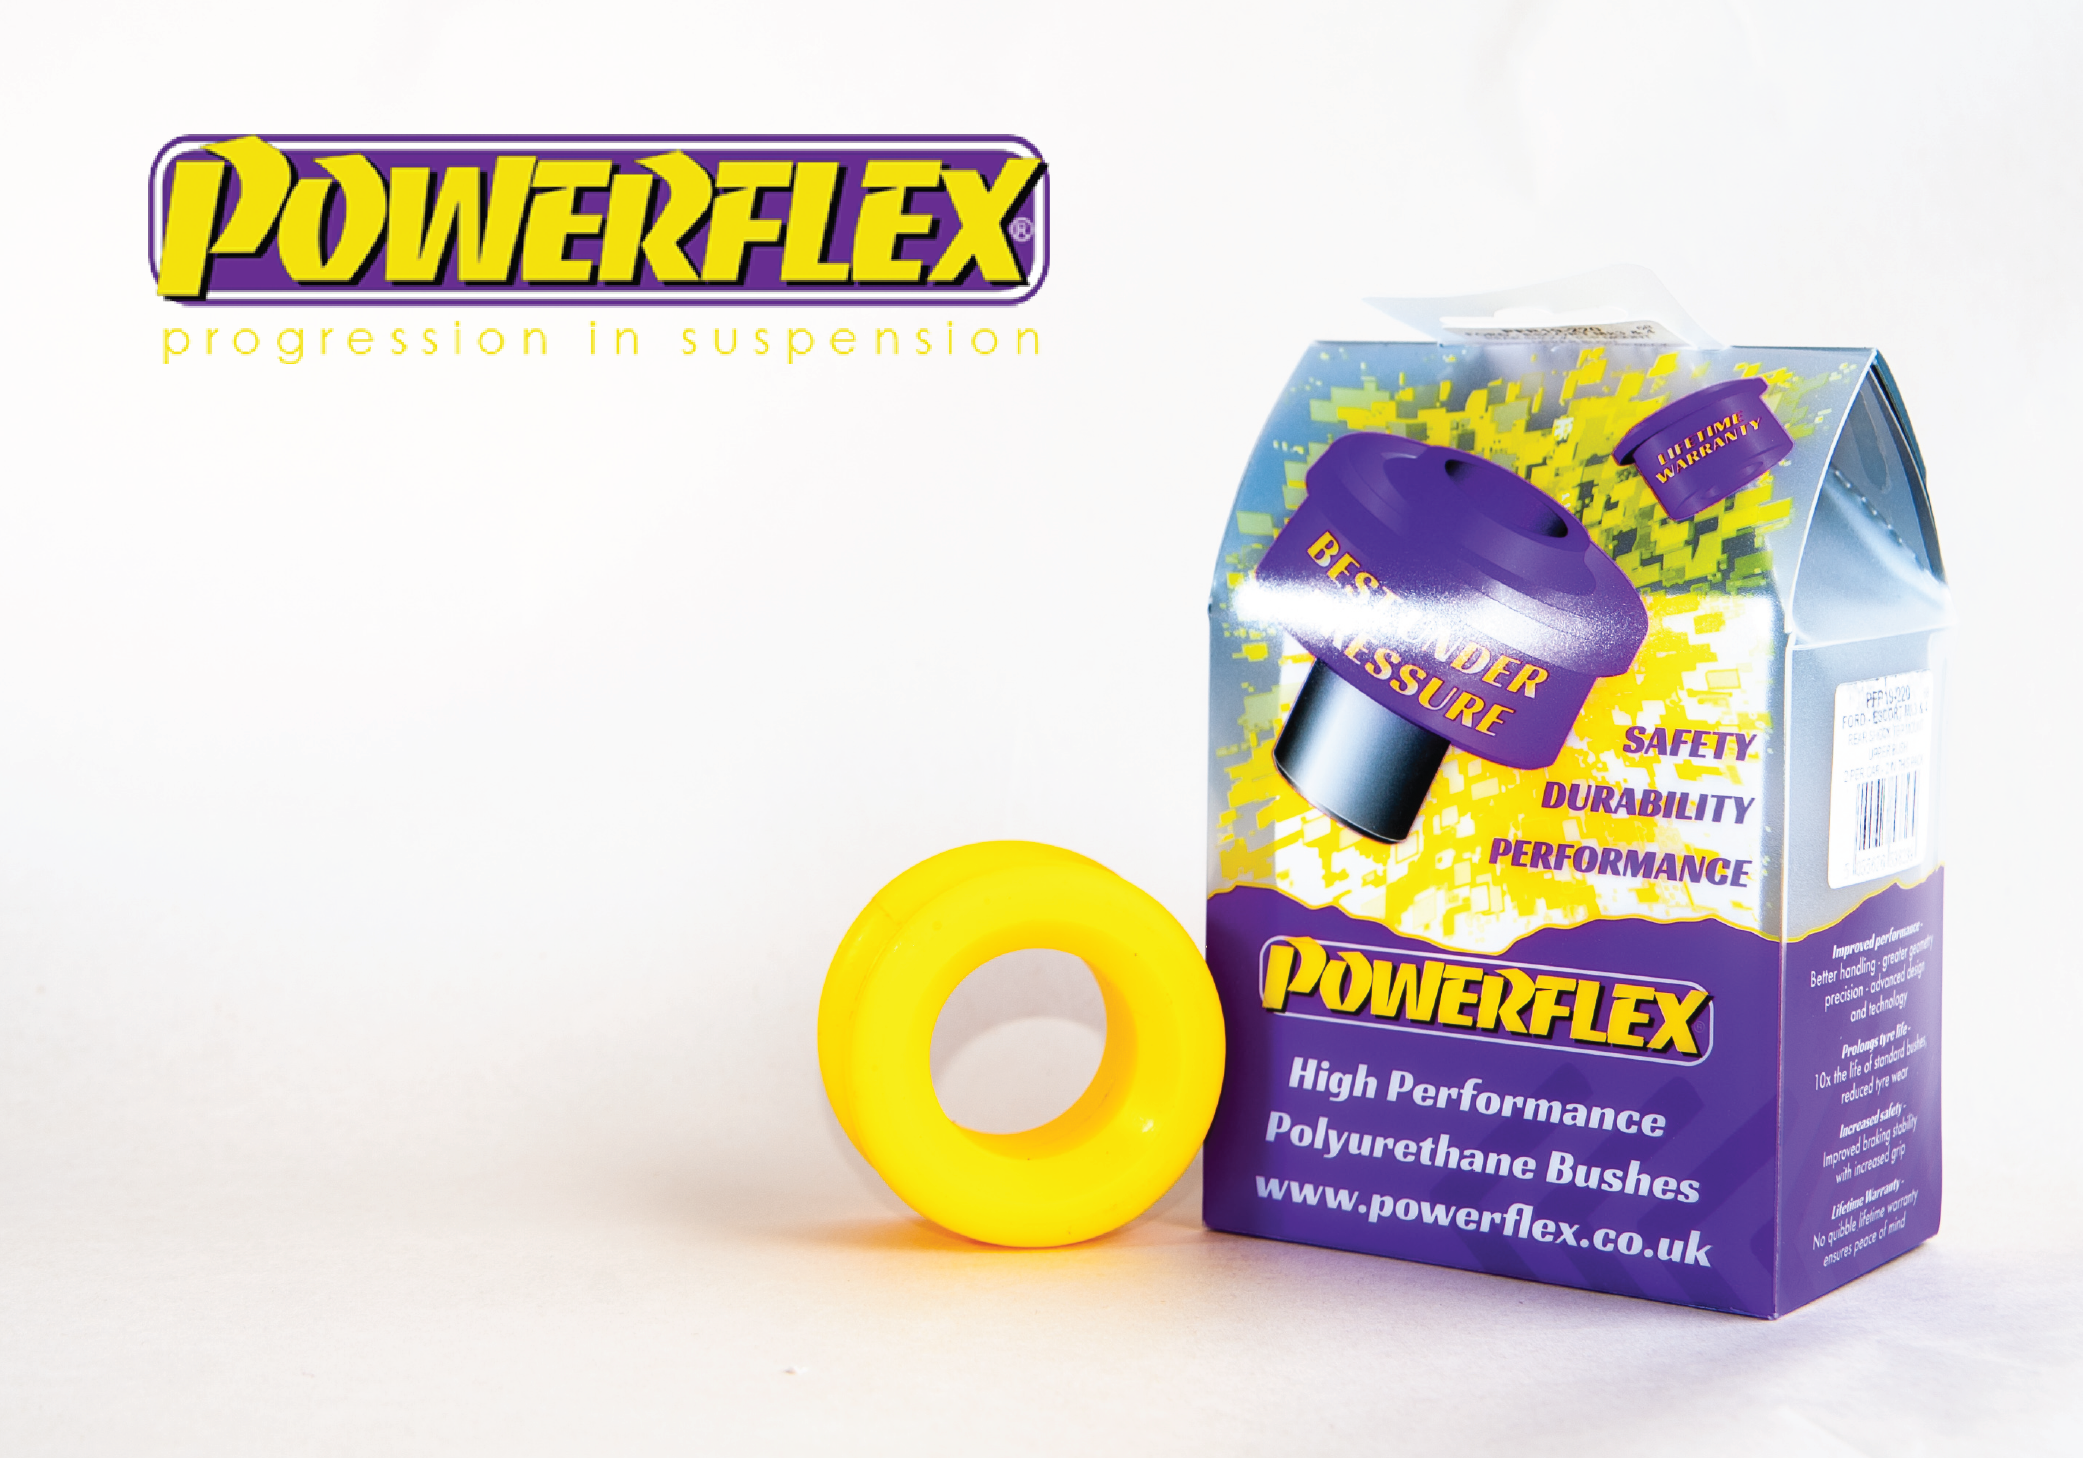 Powerflex Images-05-01.png